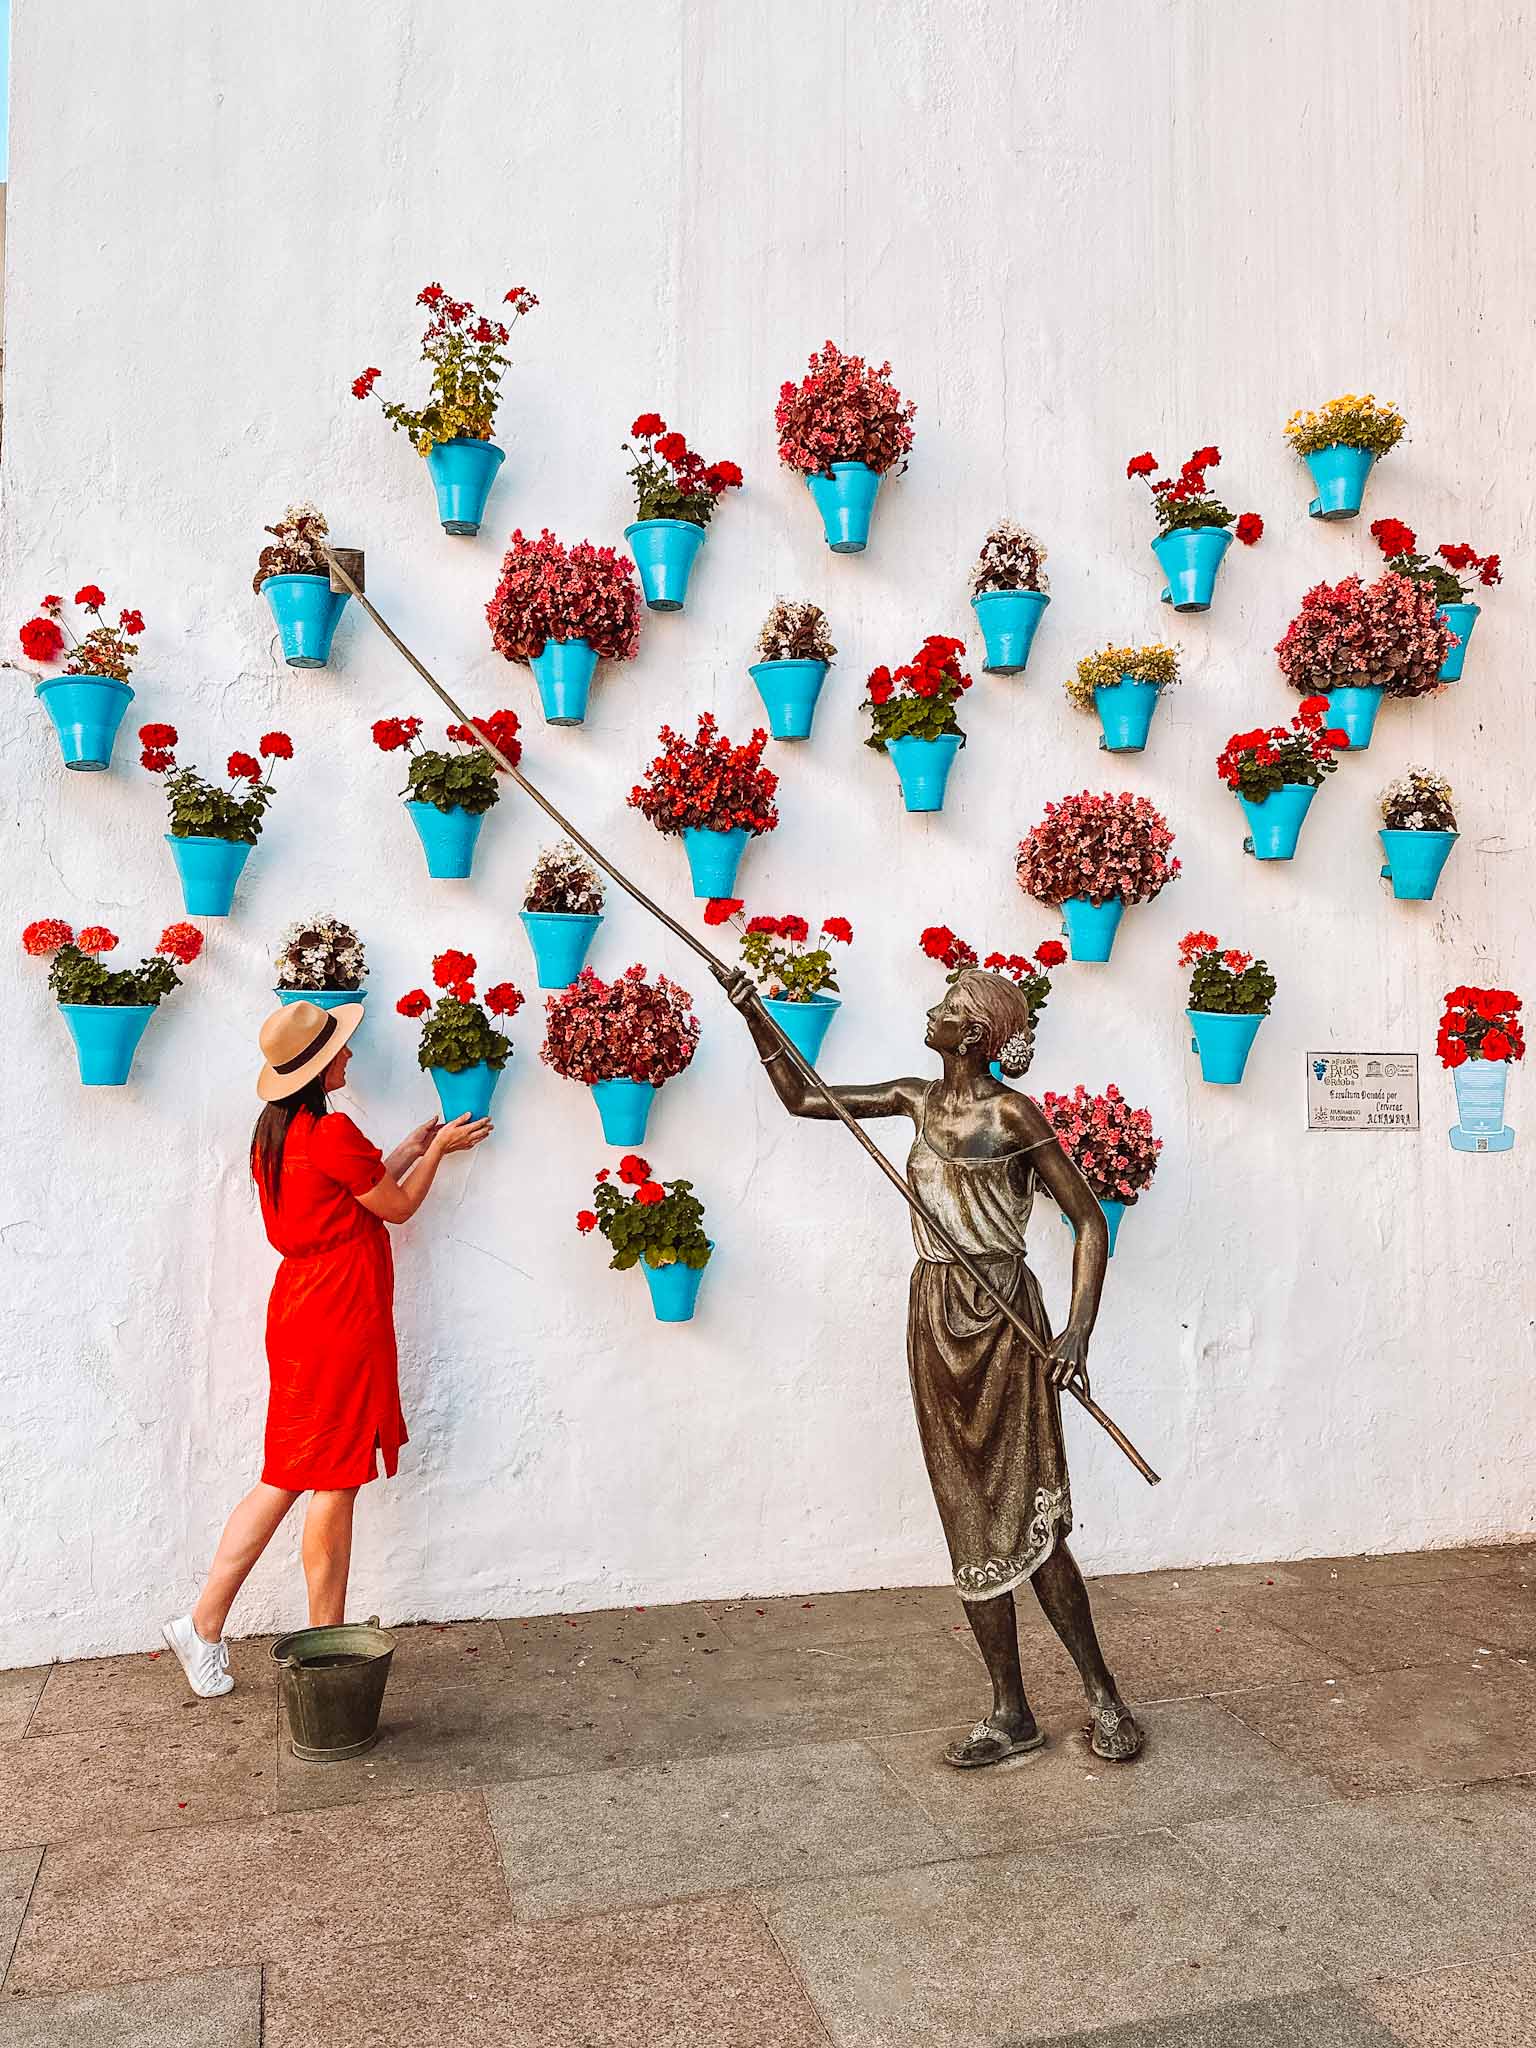 Cordoba, Spain - amazing Instagram spots in Cordoba